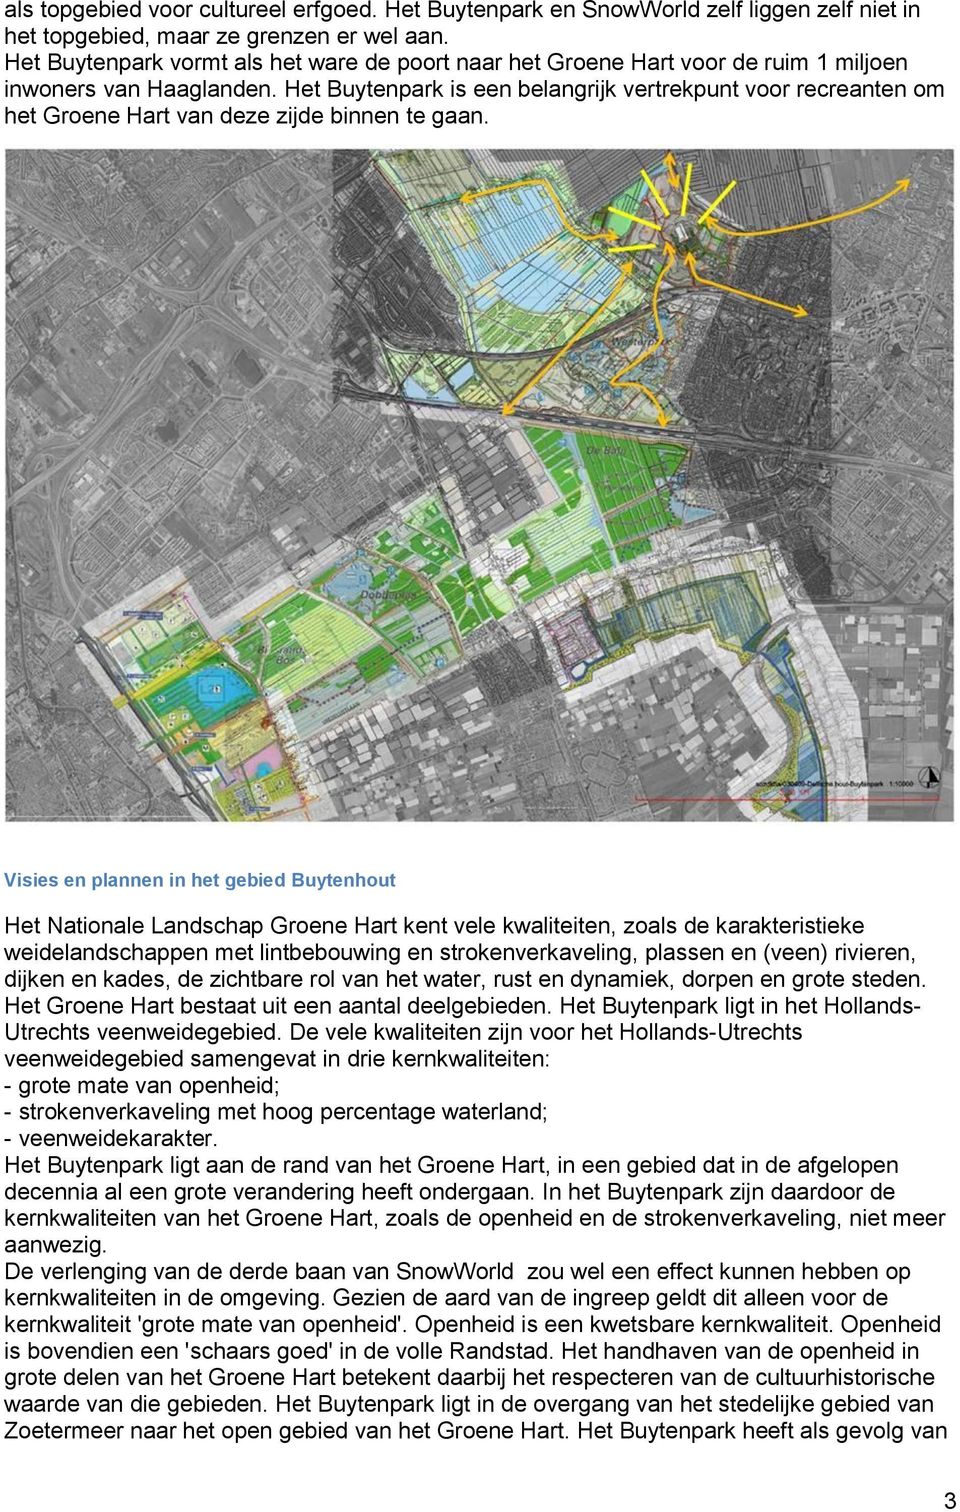 Het Buytenpark is een belangrijk vertrekpunt voor recreanten om het Groene Hart van deze zijde binnen te gaan.